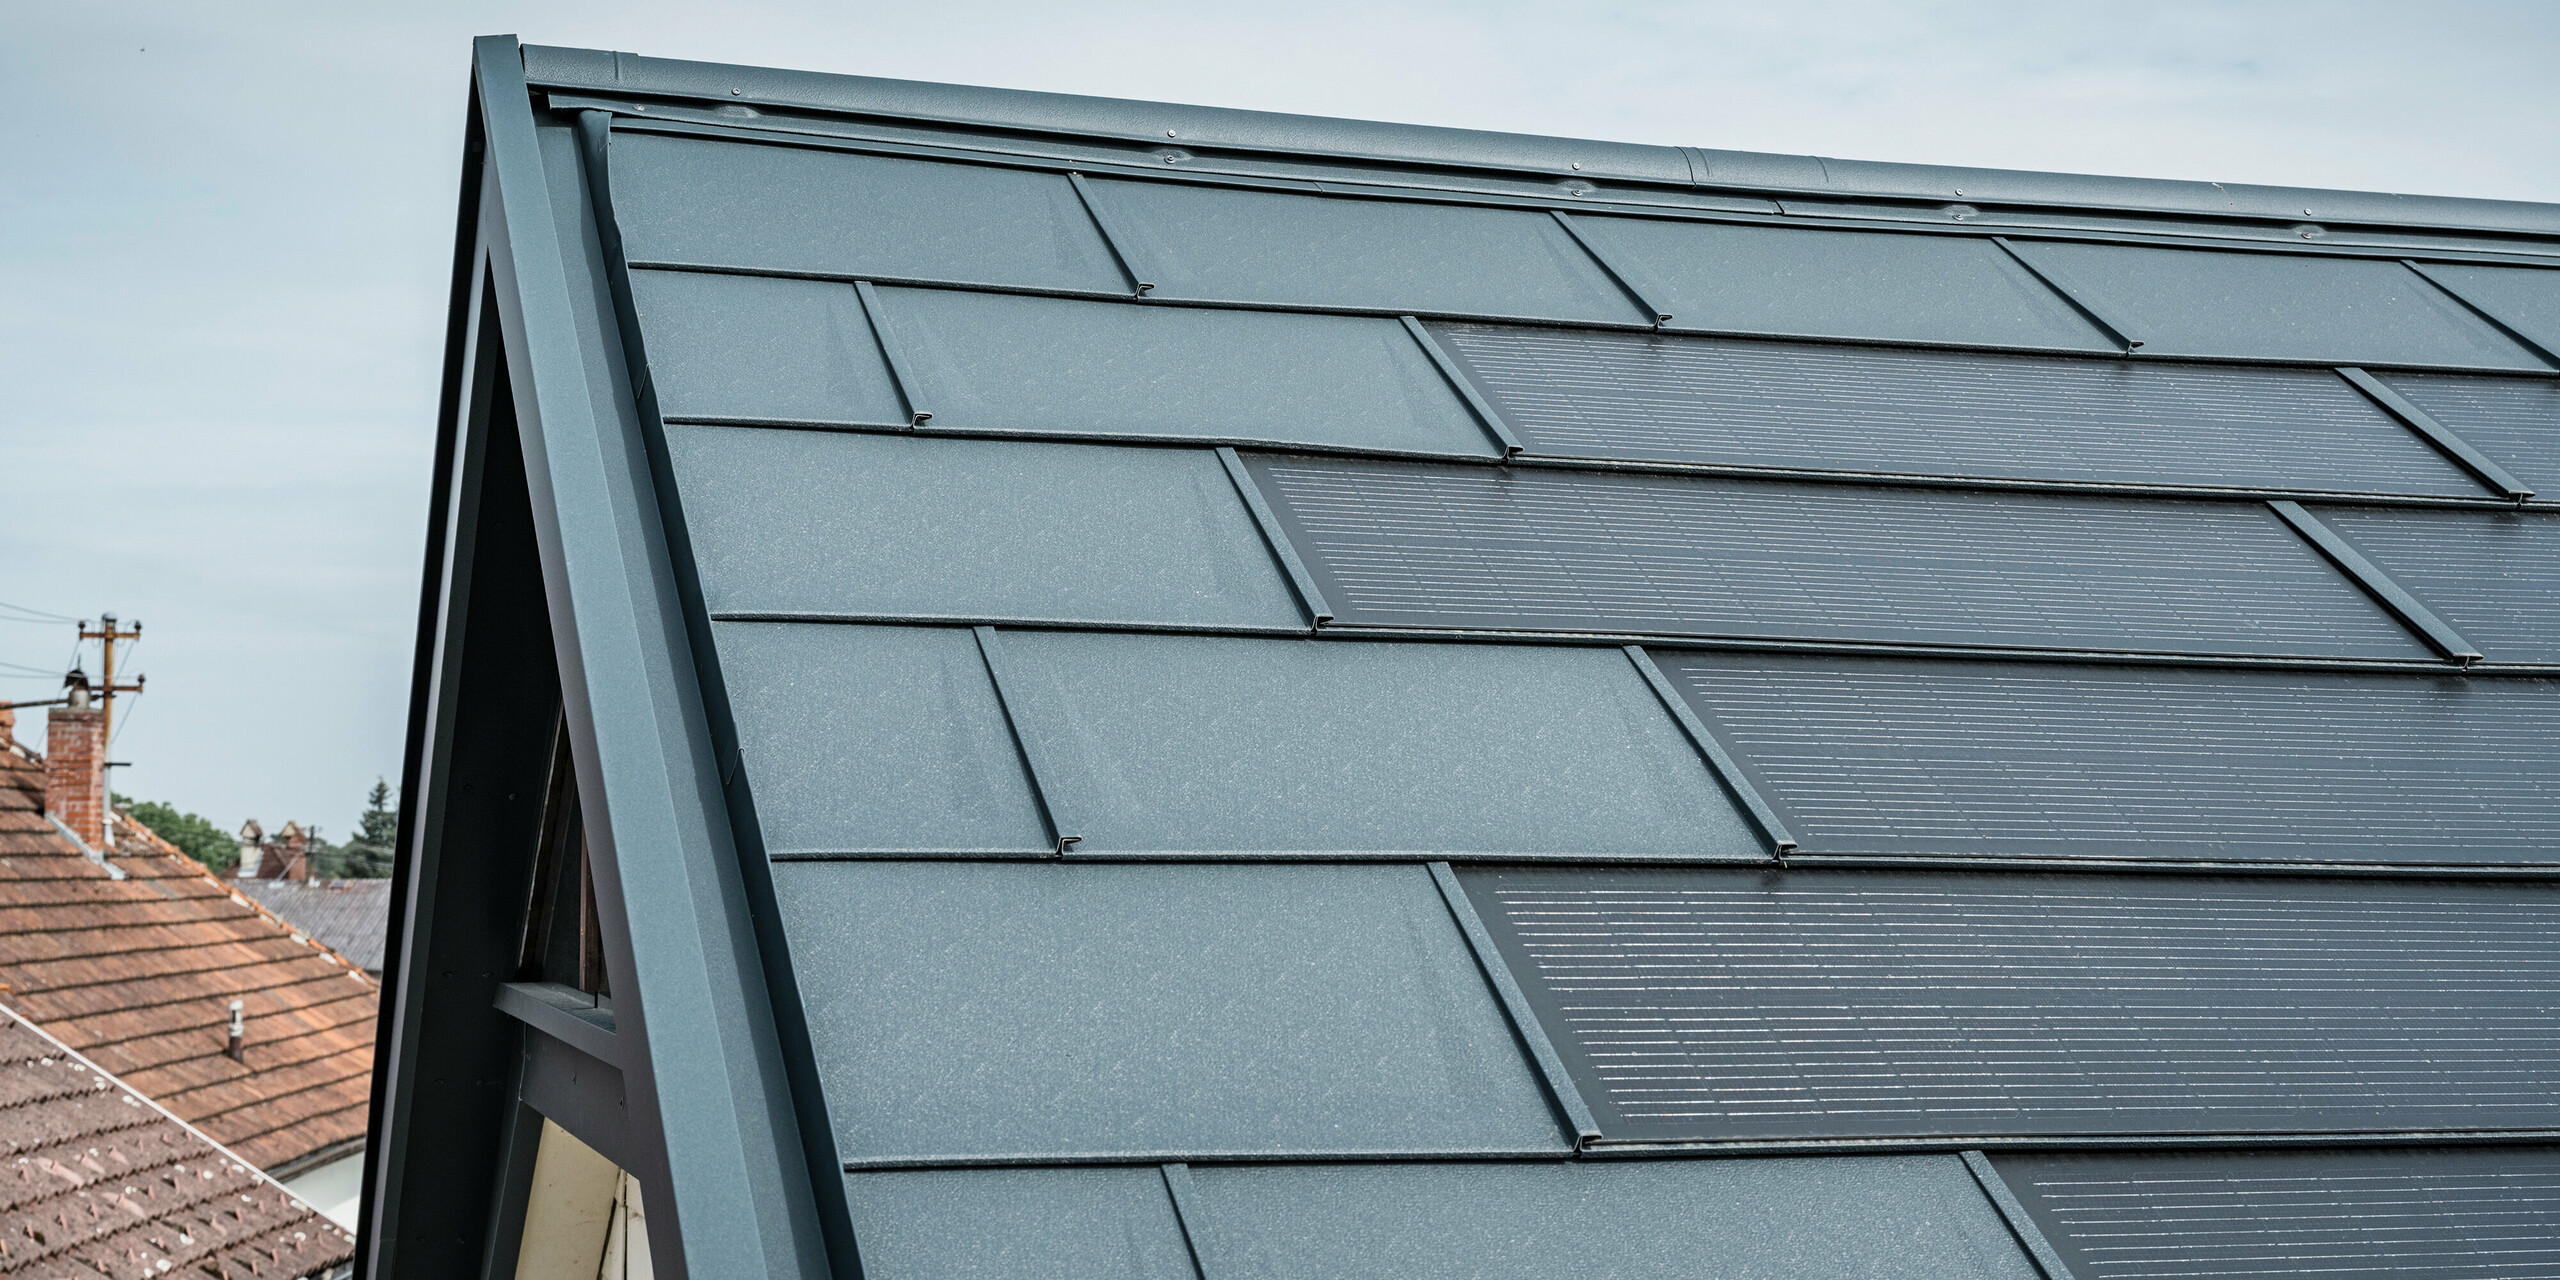 Vue détaillée du toit d'une maison équipée de la tuile solaire innovante PREFA. Les tuiles avec cellules photovoltaïques intégrées sont présentées dans un élégant anthracite. La surface homogène s'intègre parfaitement dans le toit et assure ainsi un aspect moderne et épuré. Le système de toiture innovant permet une utilisation efficace de l’énergie sans compromettre l’esthétique.